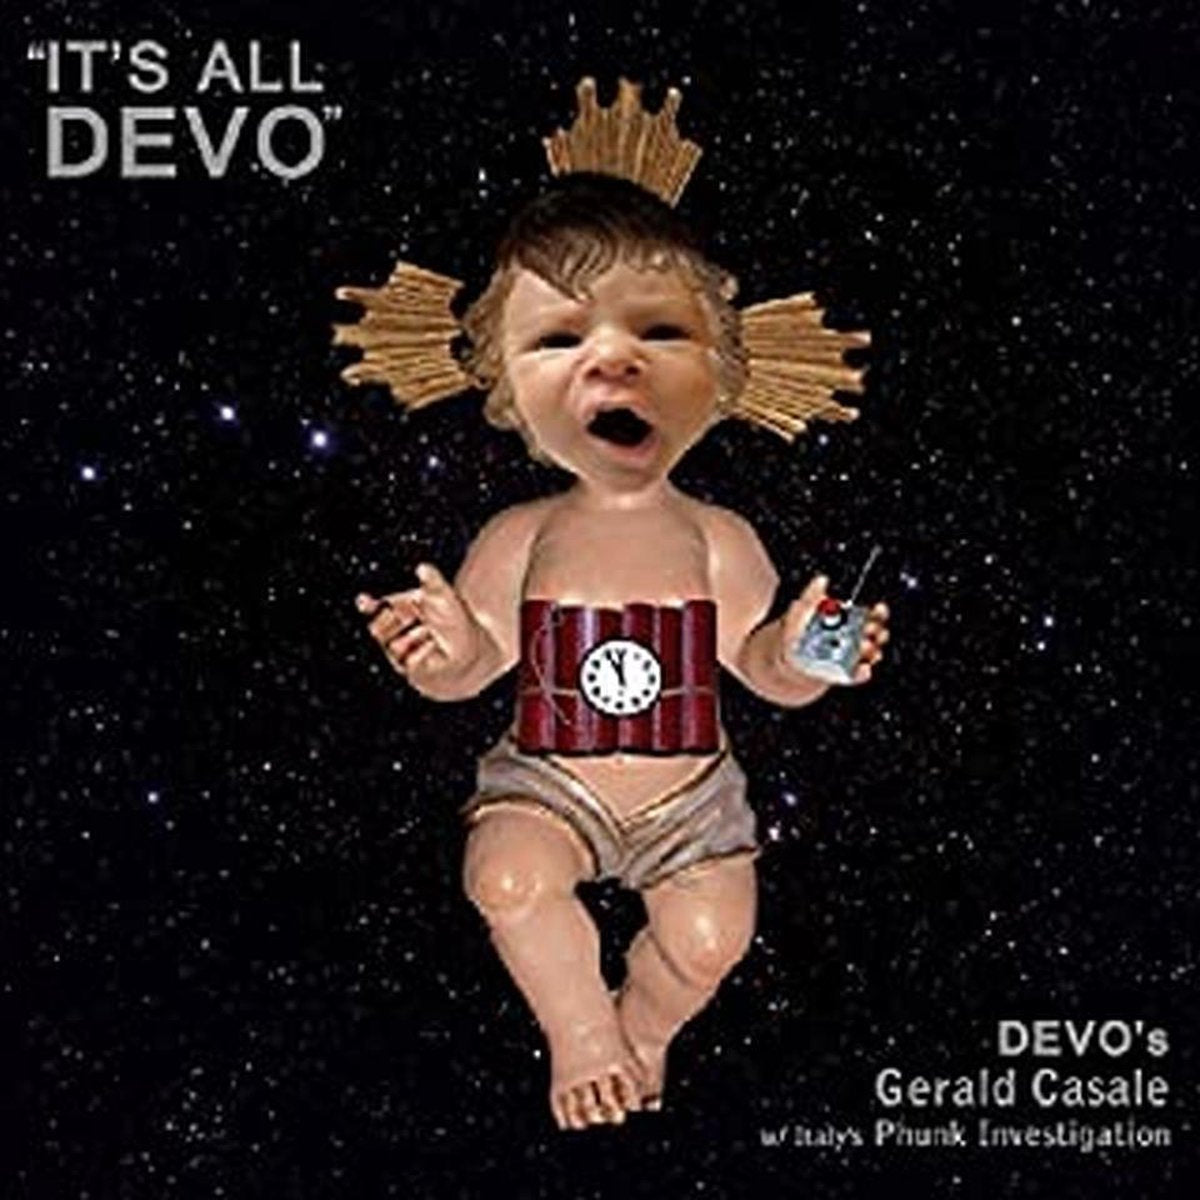 Devo's Gerald Casale - It's All Devo Picture.. |  Vinyl LP | Devo's Gerald Casale - It's All Devo Picture.. (LP) | Records on Vinyl